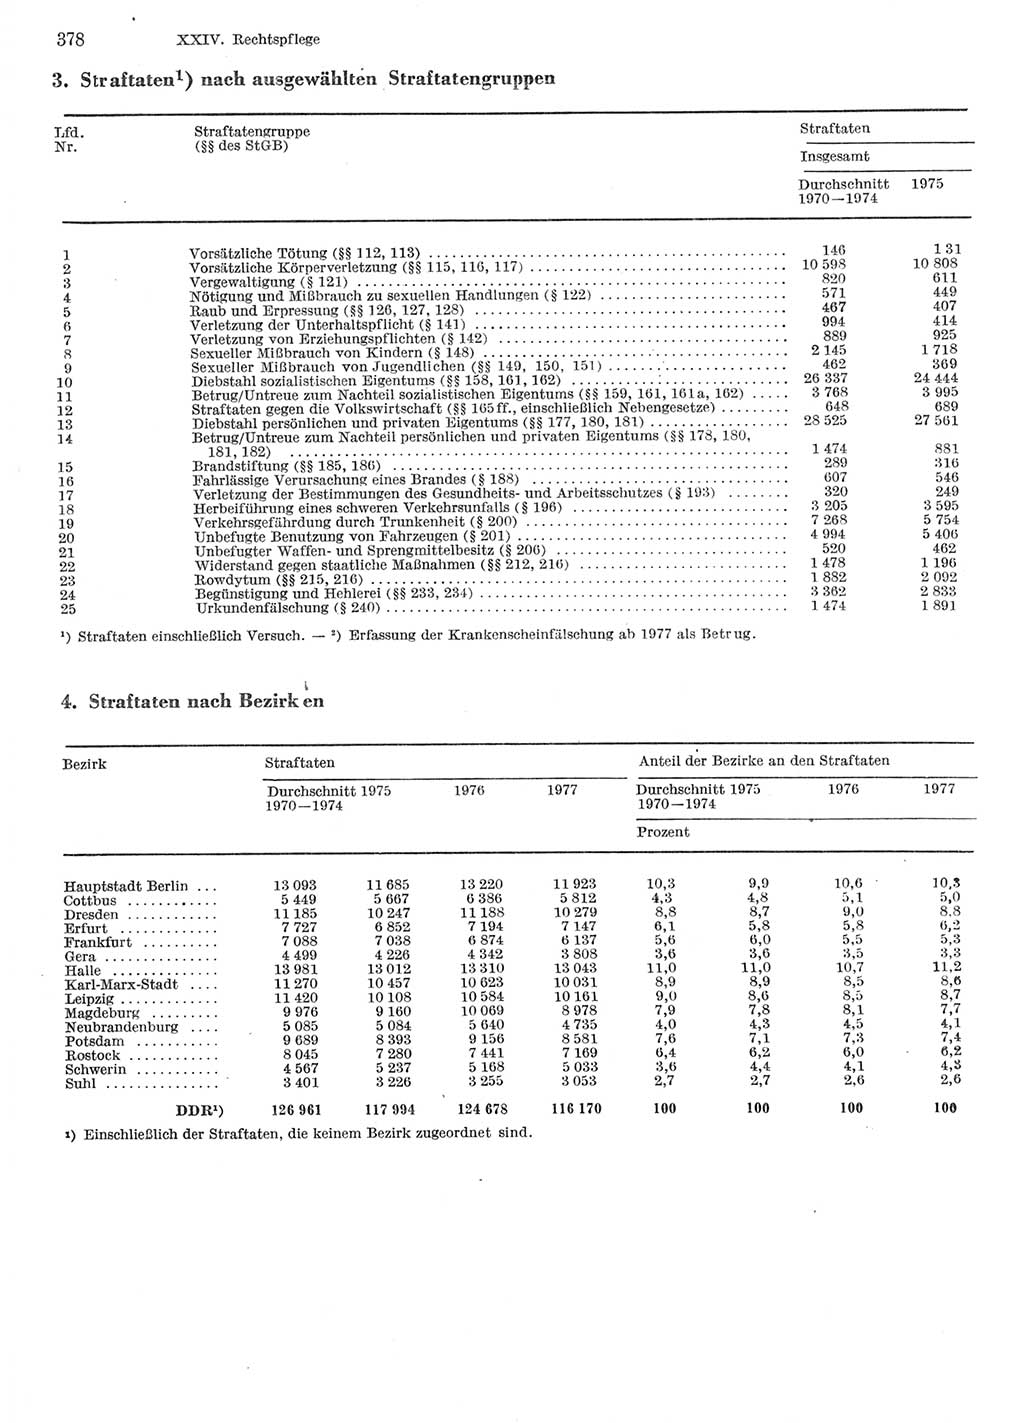 Statistisches Jahrbuch der Deutschen Demokratischen Republik (DDR) 1978, Seite 378 (Stat. Jb. DDR 1978, S. 378)